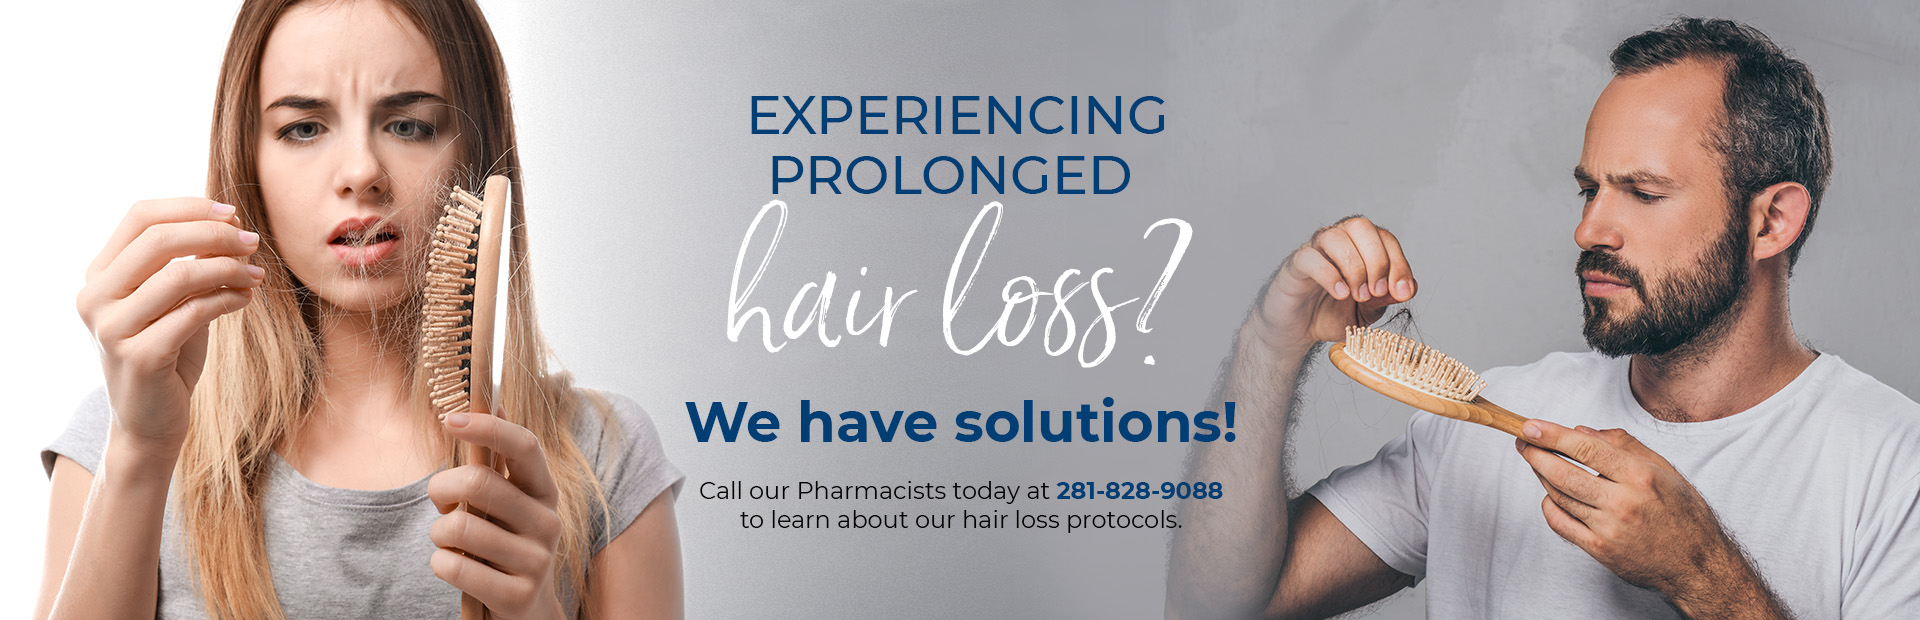 Hair Loss Pharmacy Banner